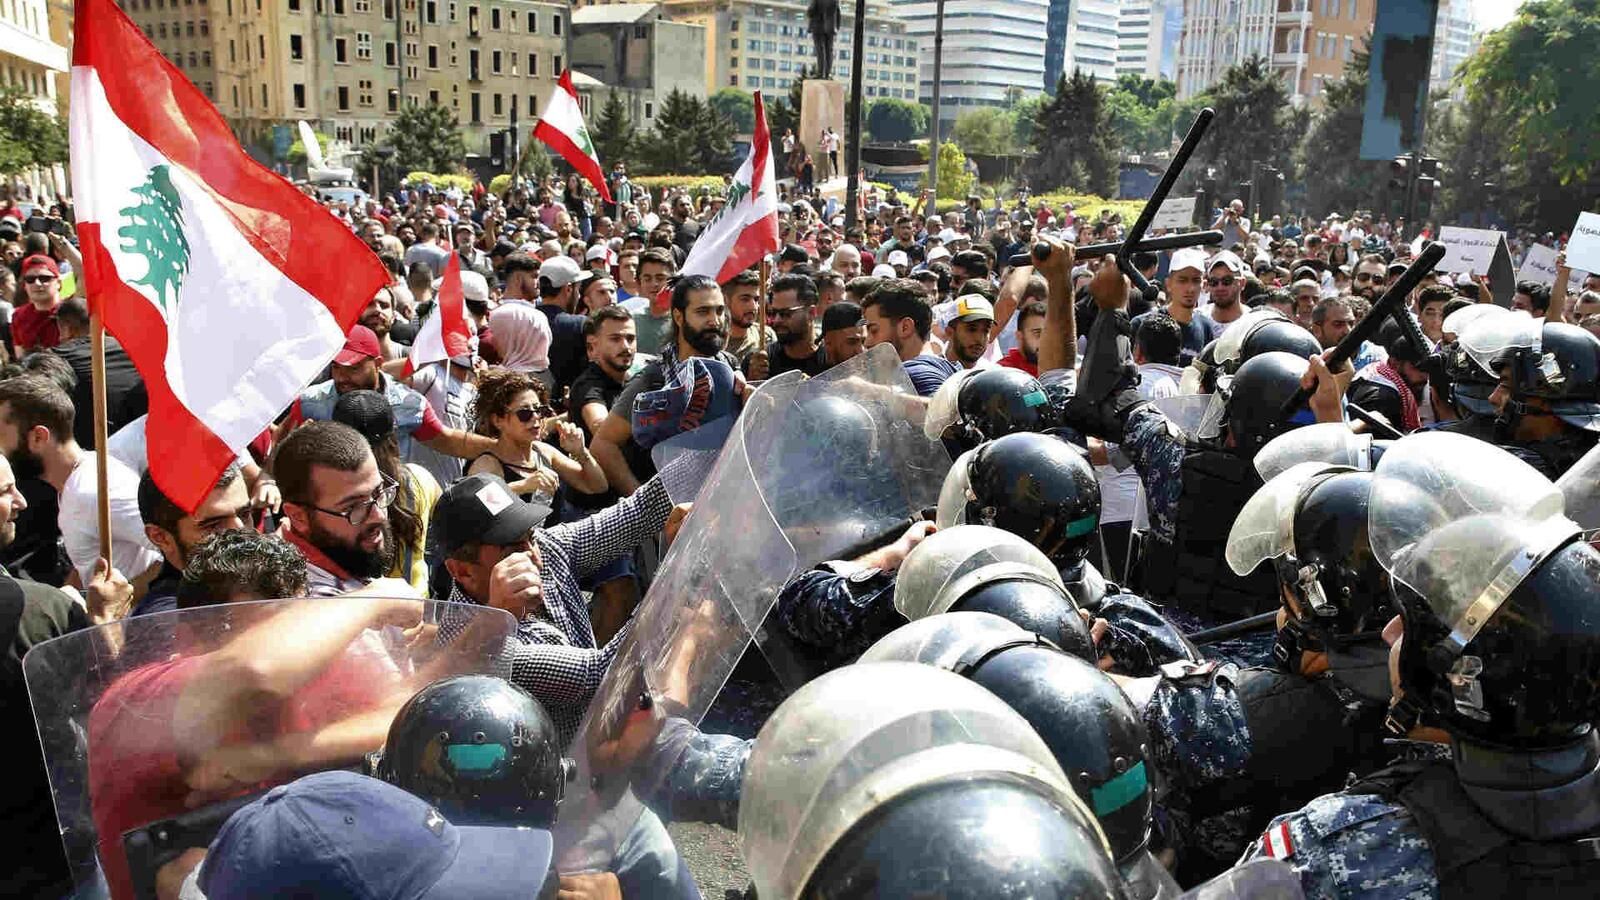 التظاهر وقطع الطرق يتواصل اليوم الجمعة بمختلف المناطق اللبنانية رفضا لفرض ضرائب جديدة